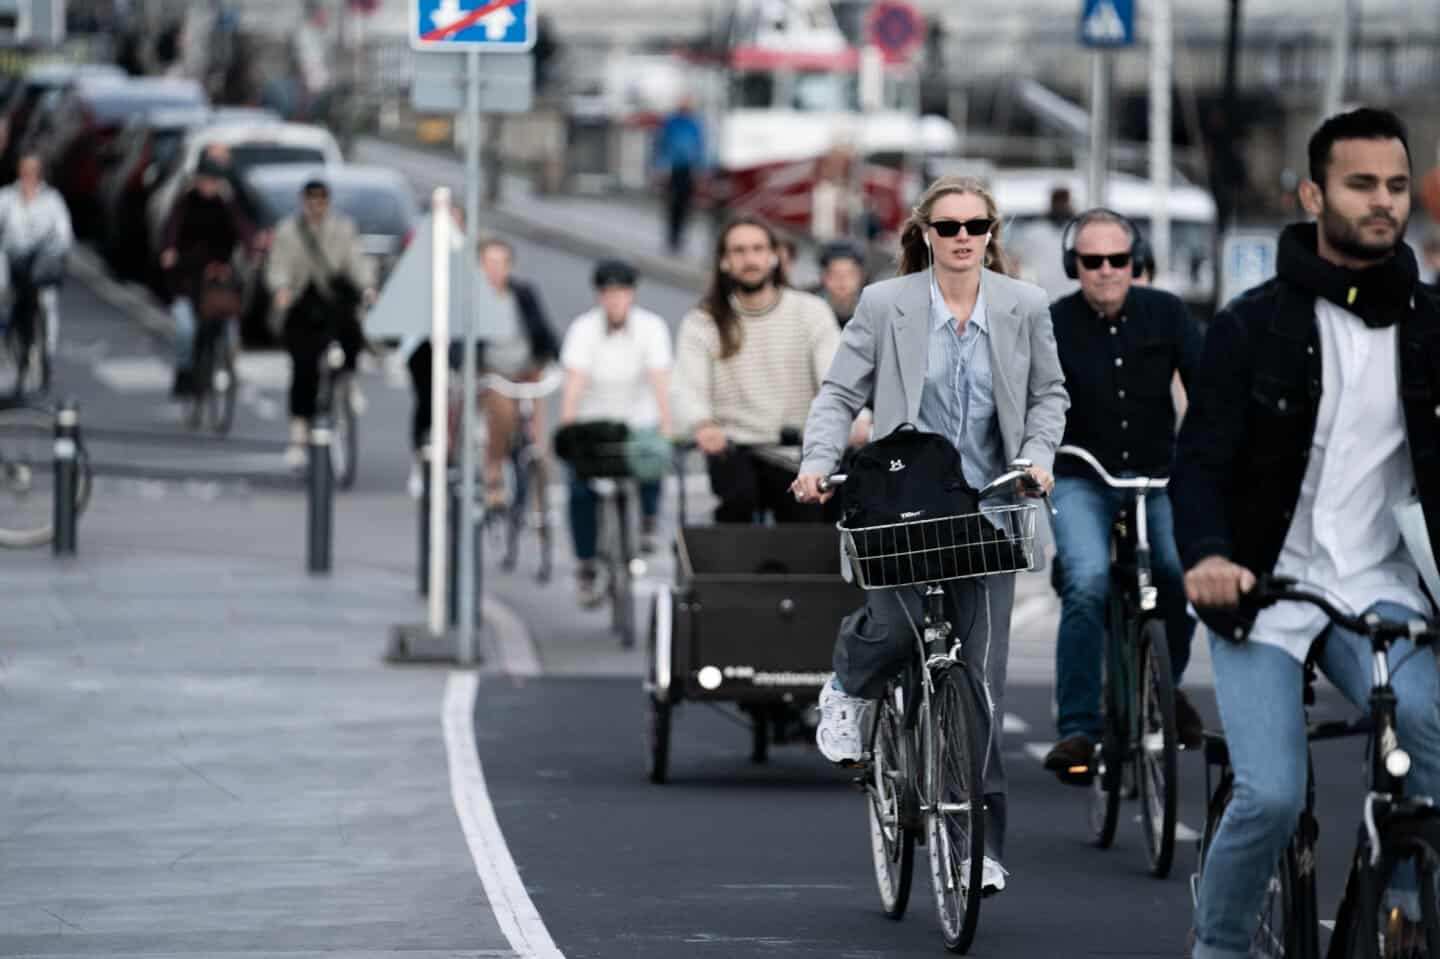 Der bliver stjålet 'vildt mange' cykler: Skal stelnumre erstattes digitale koder? | avisendanmark.dk